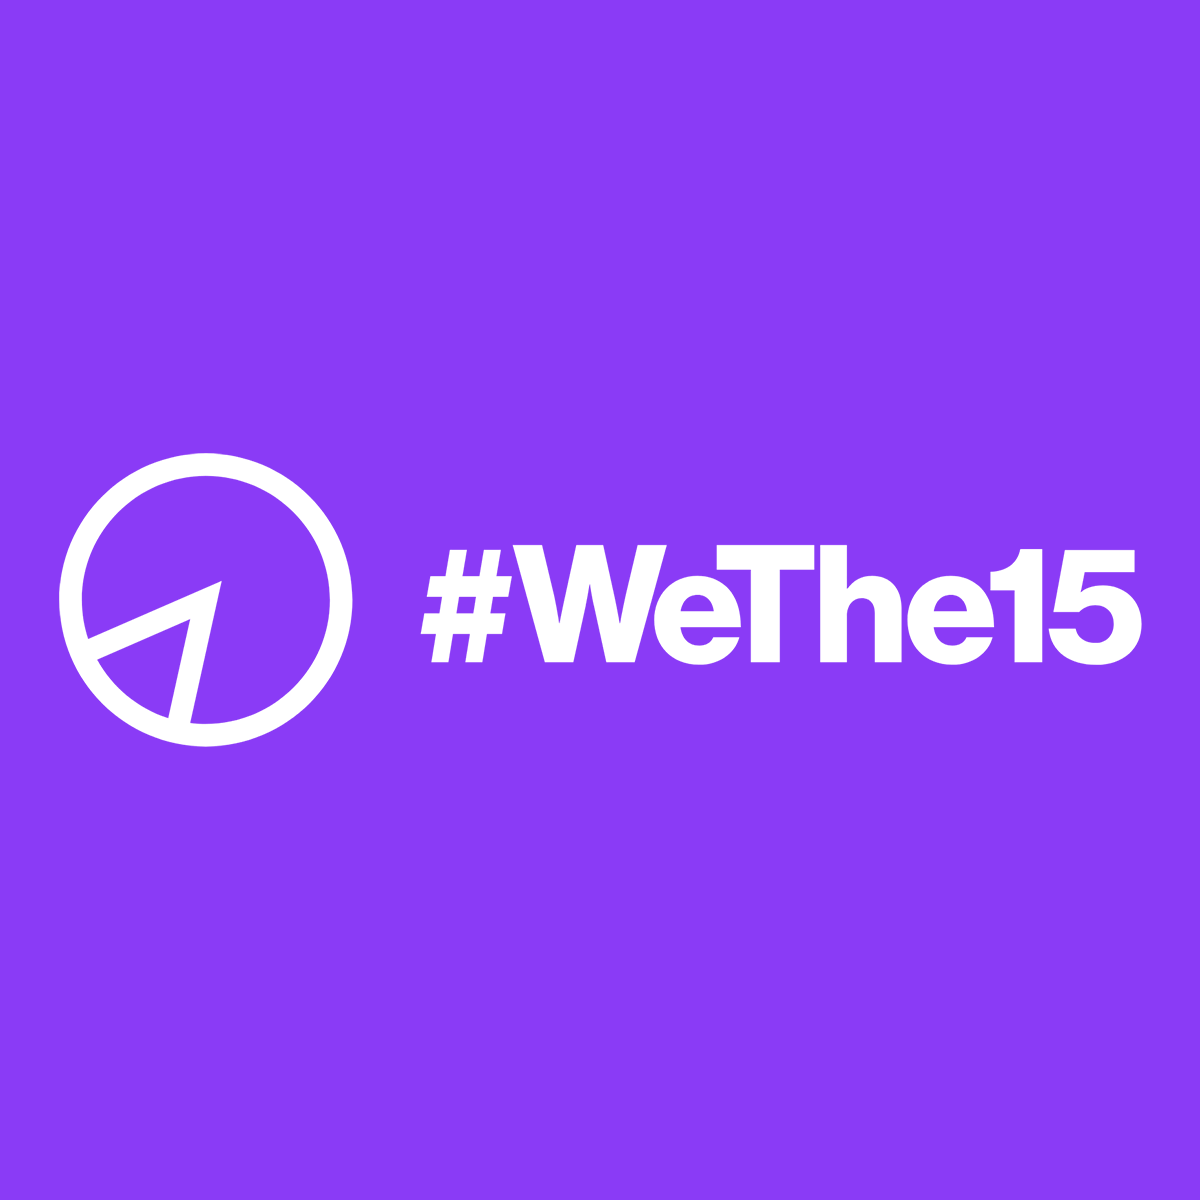 WeThe15 logo on purple background